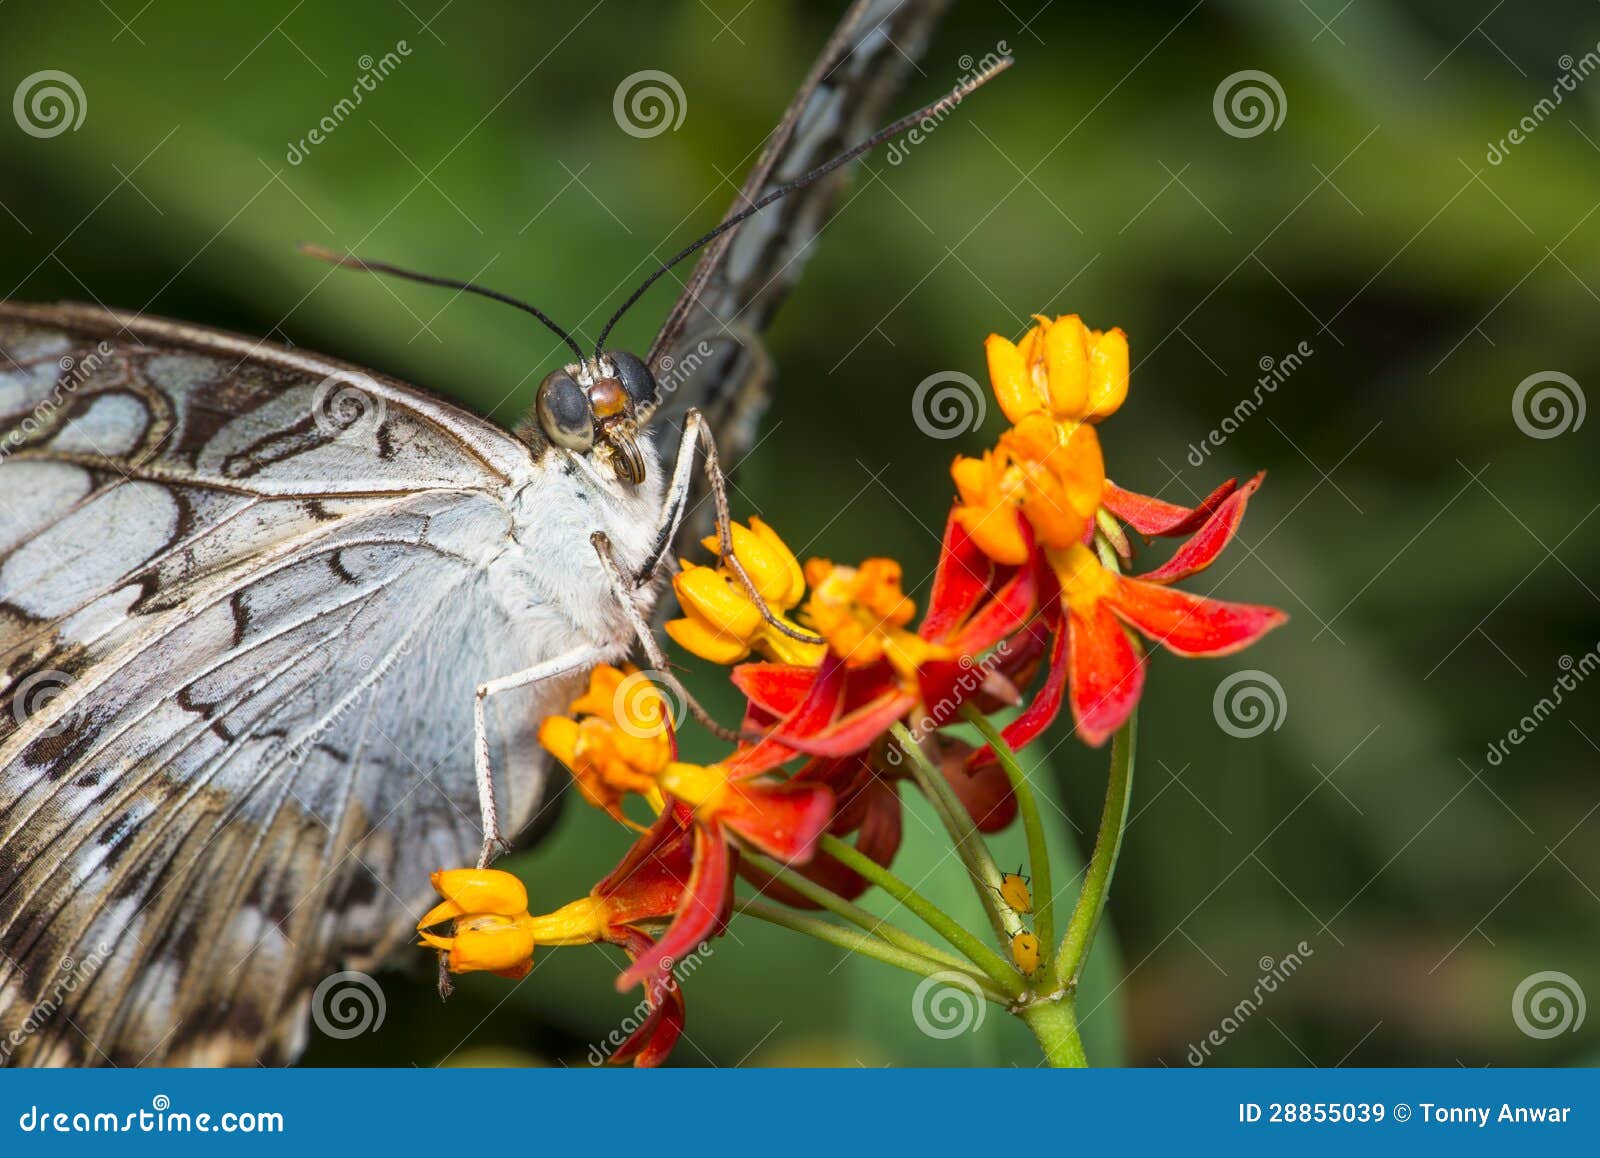 clipper butterfly macro